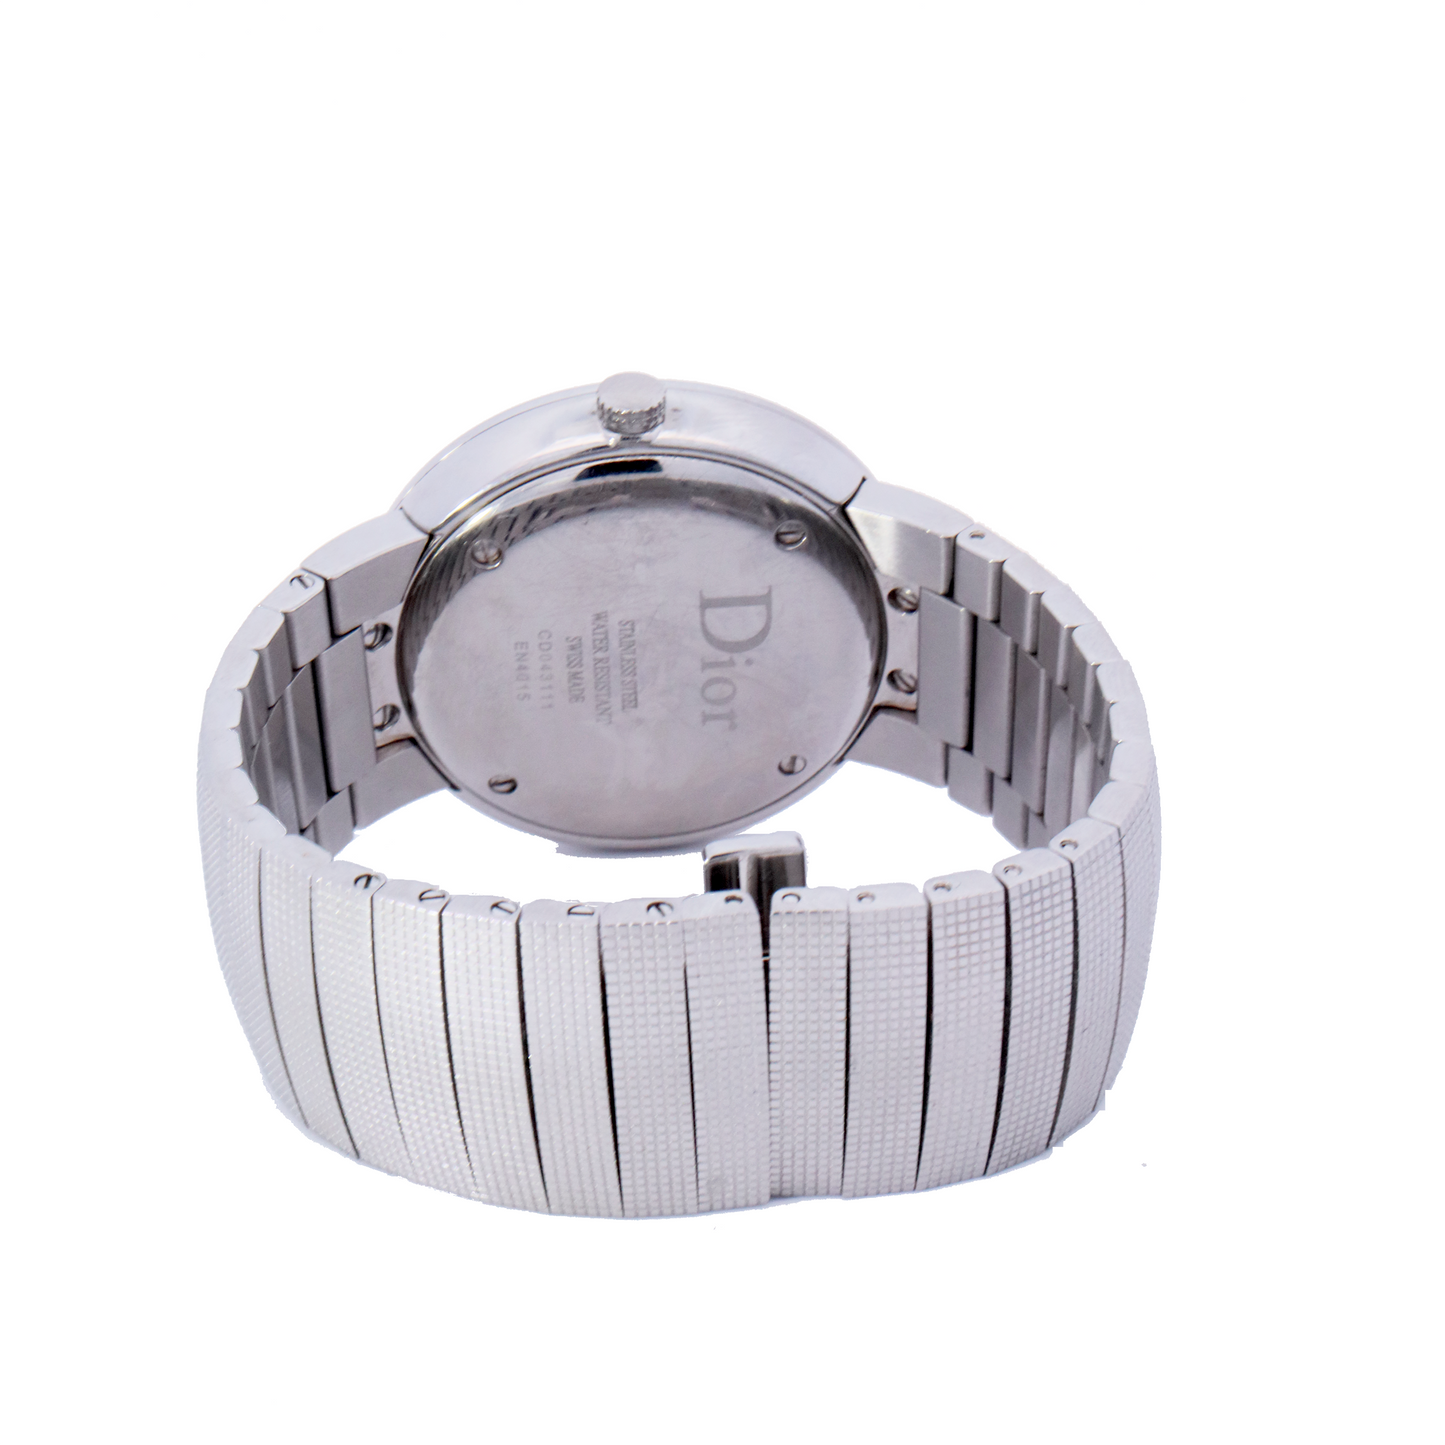 Dior Stainless Steel 34mm Diamond Dial Watch | Ref# DIORC0043111 - Happy Jewelers Fine Jewelry Lifetime Warranty